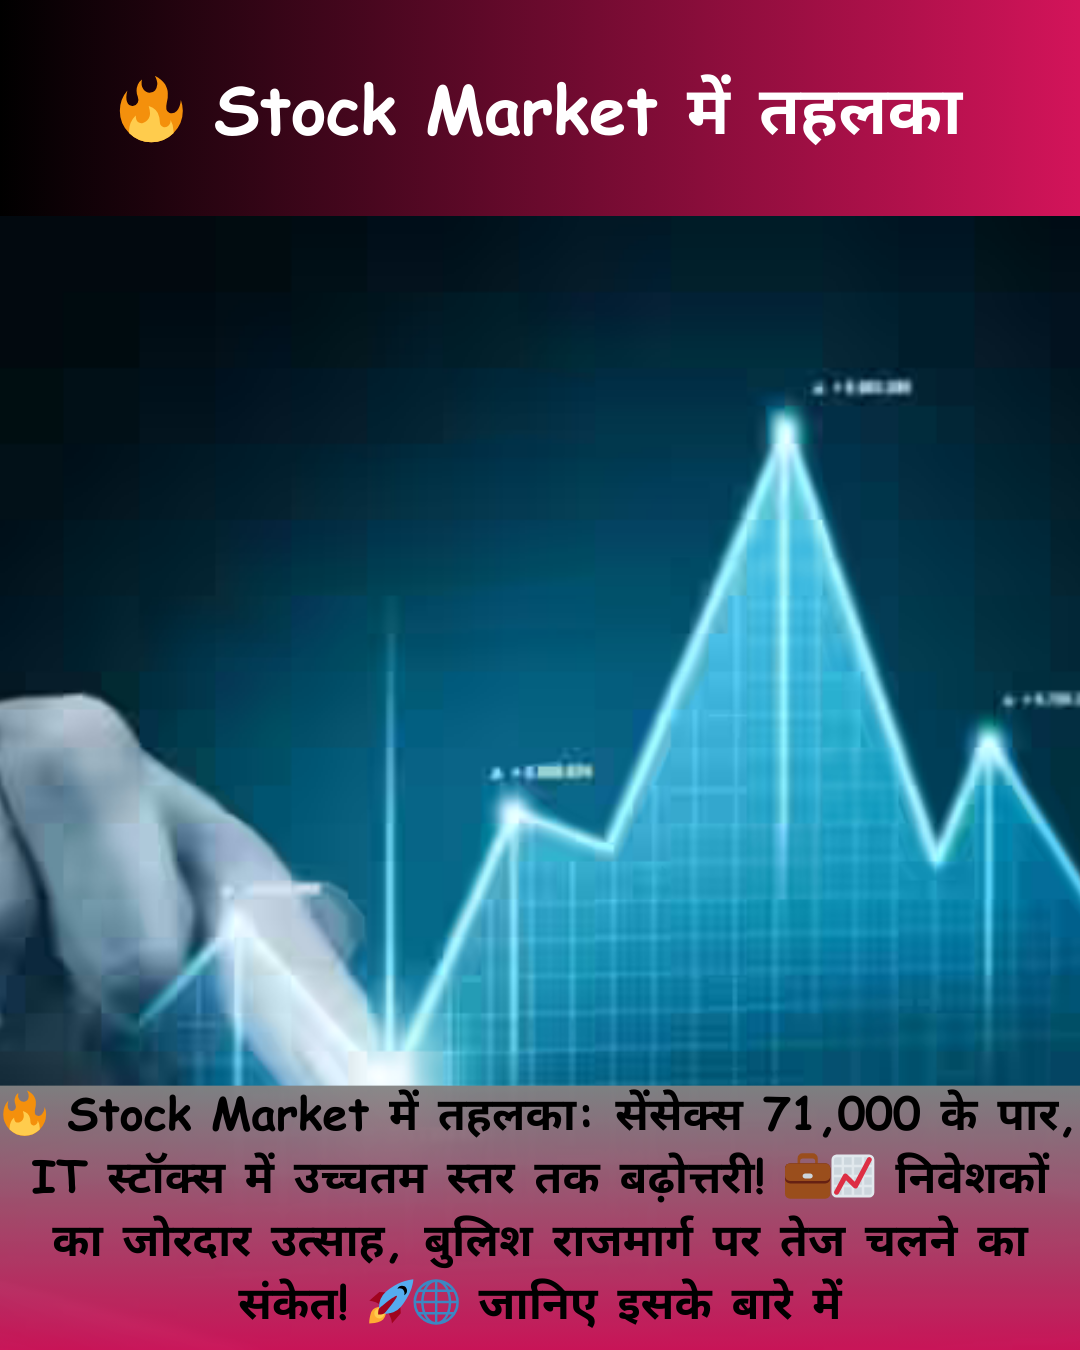 🔥 Stock Market में तहलका: सेंसेक्स 71,000 के पार, IT स्टॉक्स में Higest स्तर तक बढ़ोत्तरी! तेज चलने का संकेत! 🚀🌐